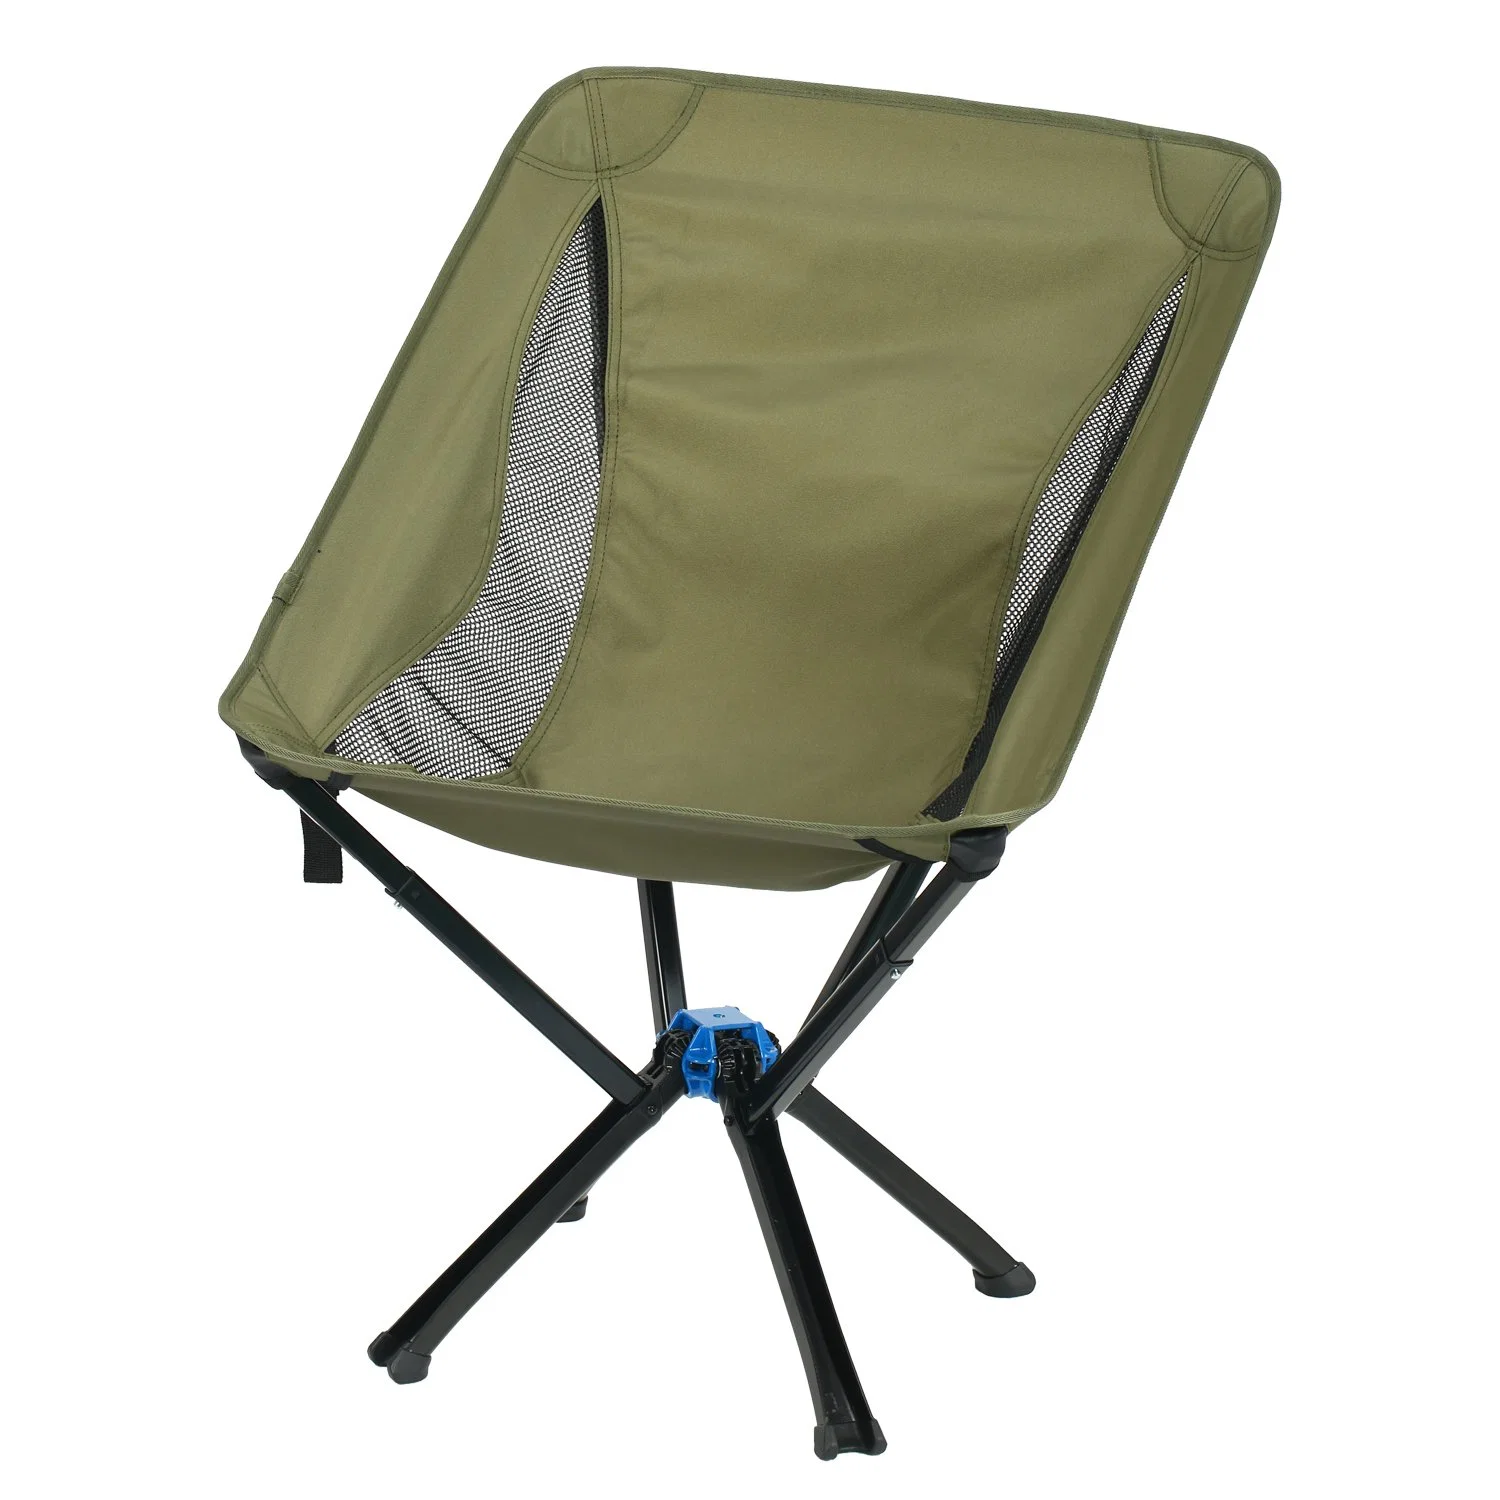 Chaise de camping Anywhere Chair de grande taille - une chaise pliante portable et polyvalente pour adultes.